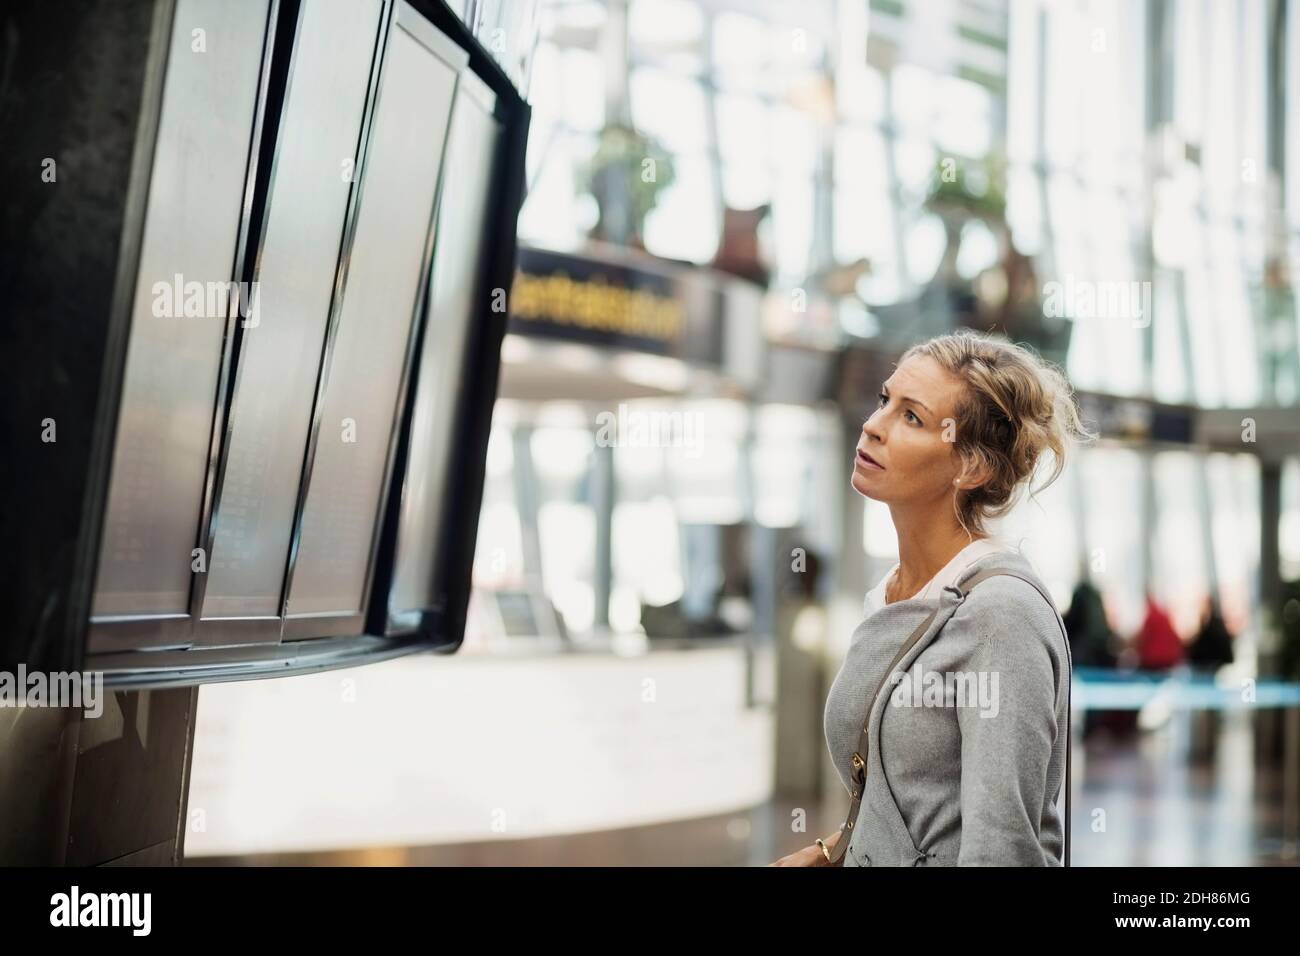 Vue latérale d'une femme d'affaires lisant le tableau des départs à l'arrivée à l'aéroport Banque D'Images